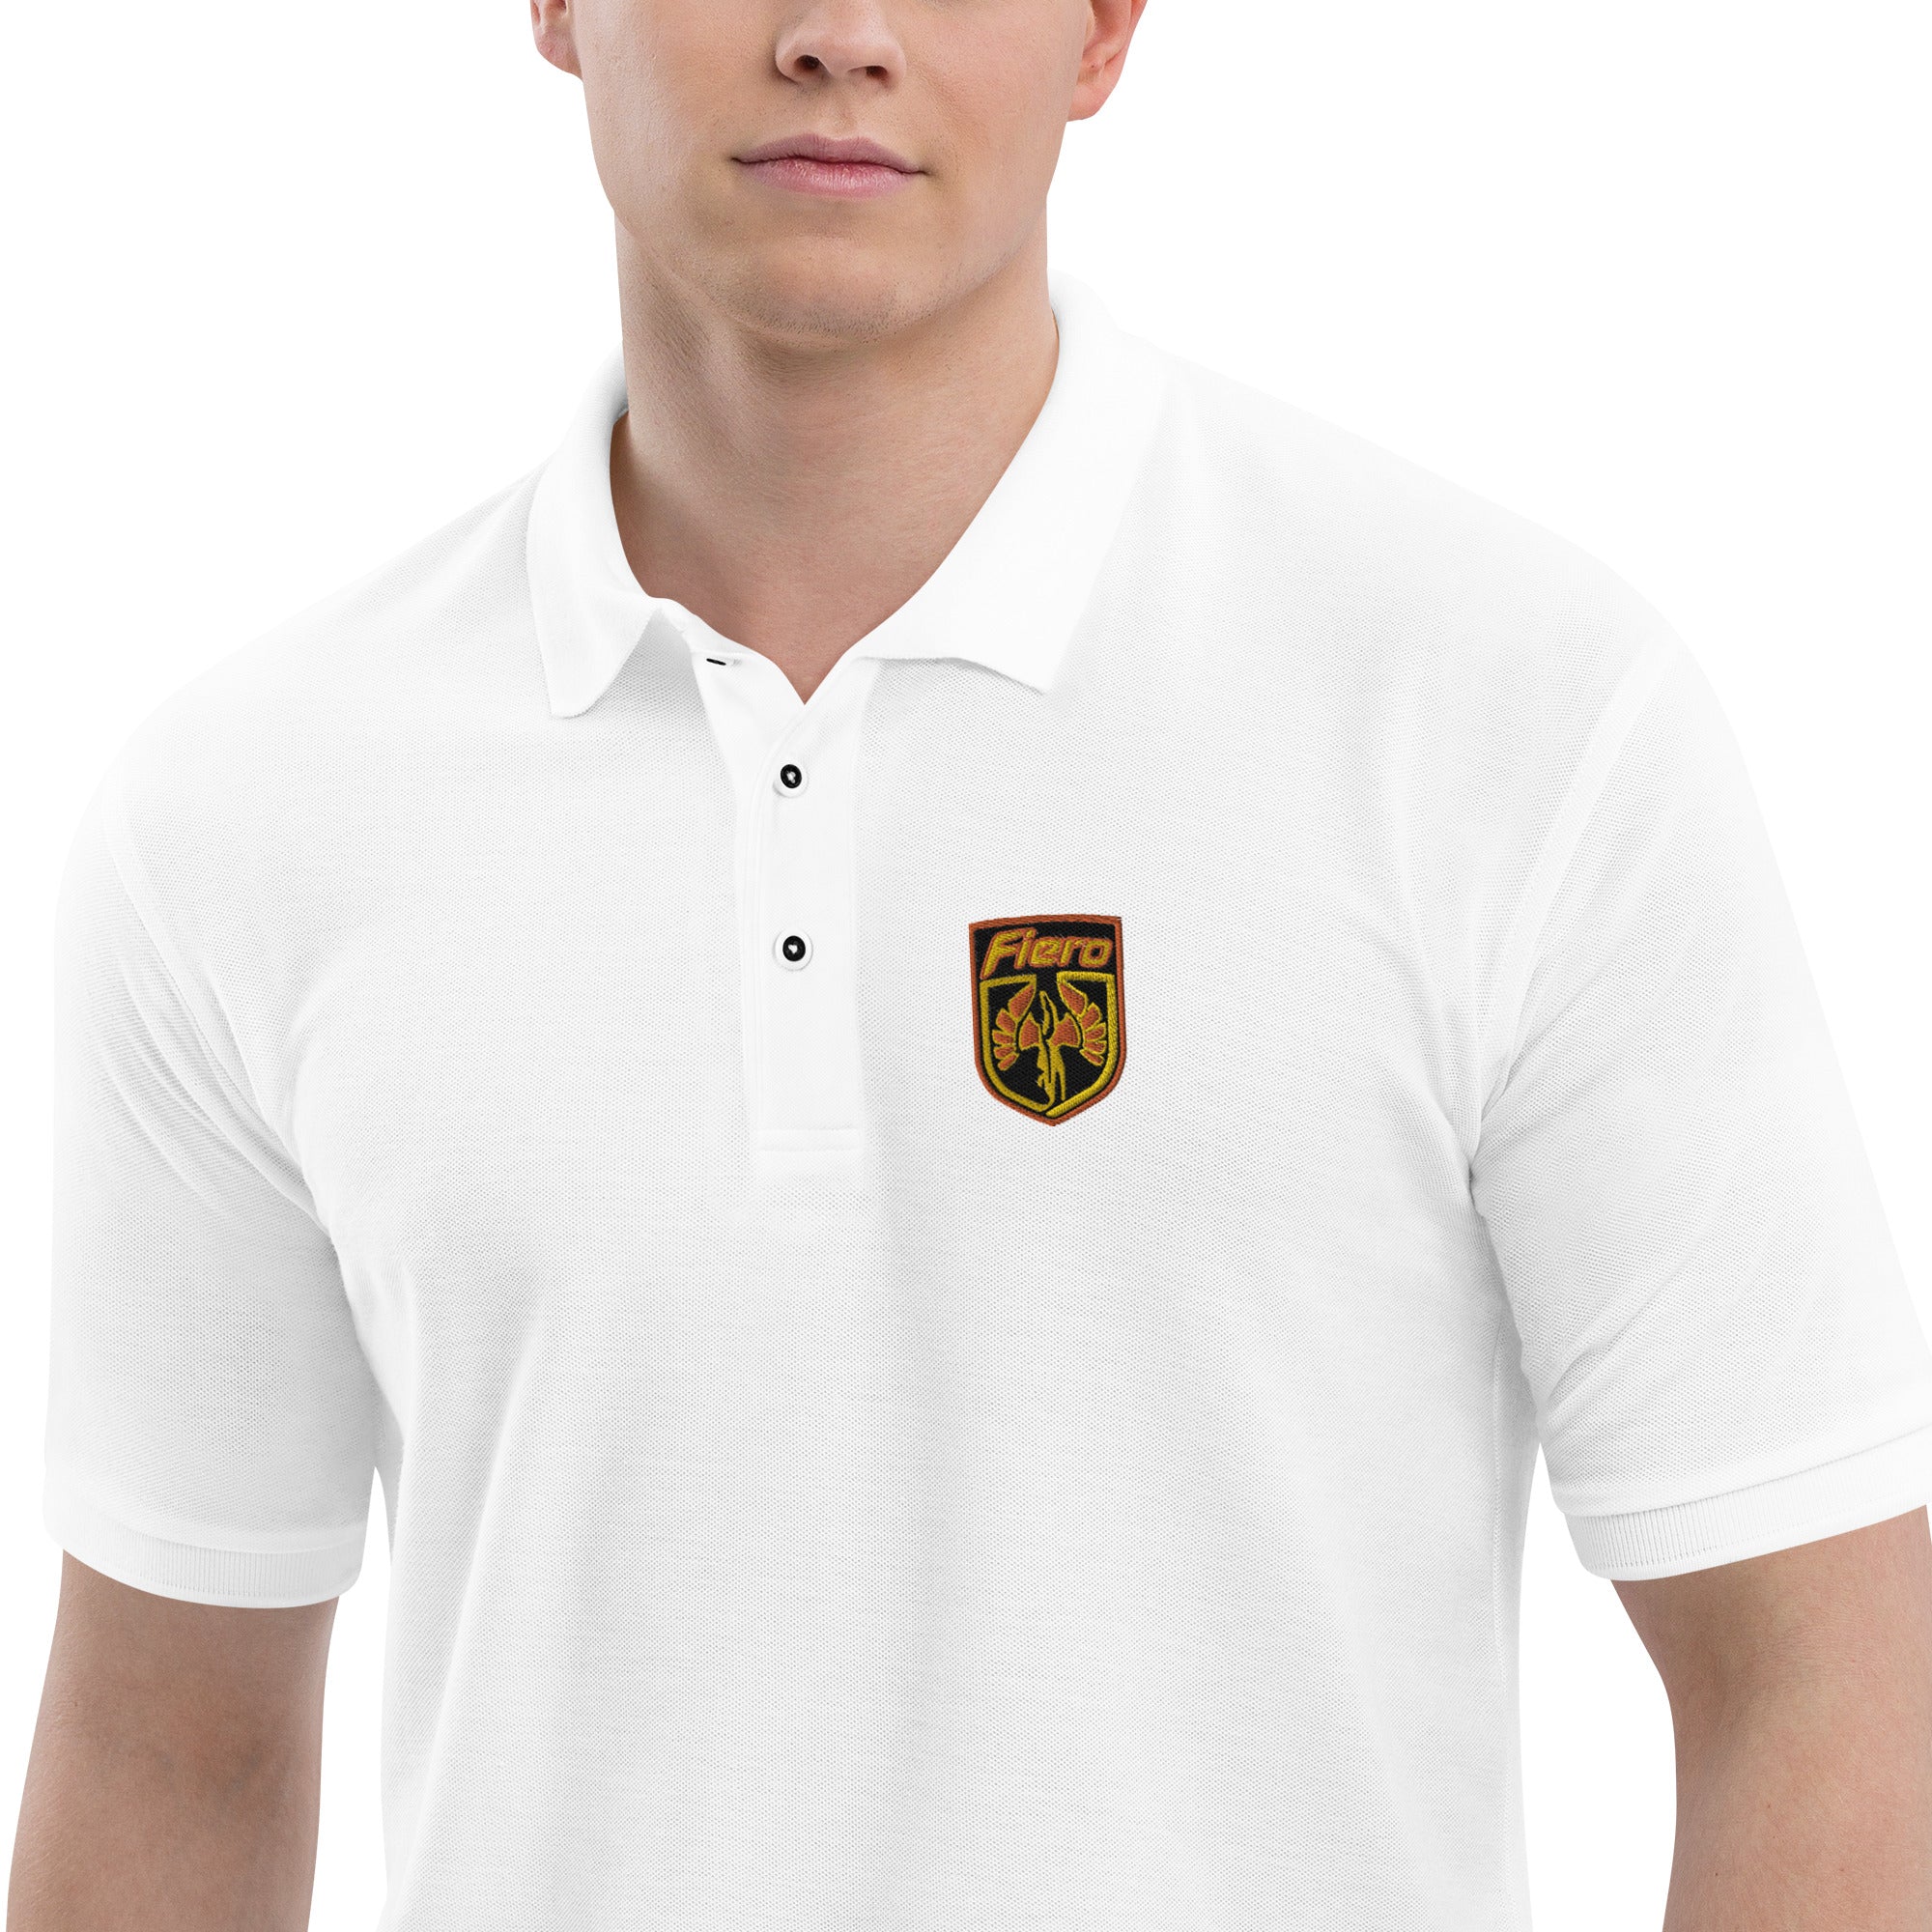 Fiero Embroidered Men's Premium Polo Shirt - Pontiac